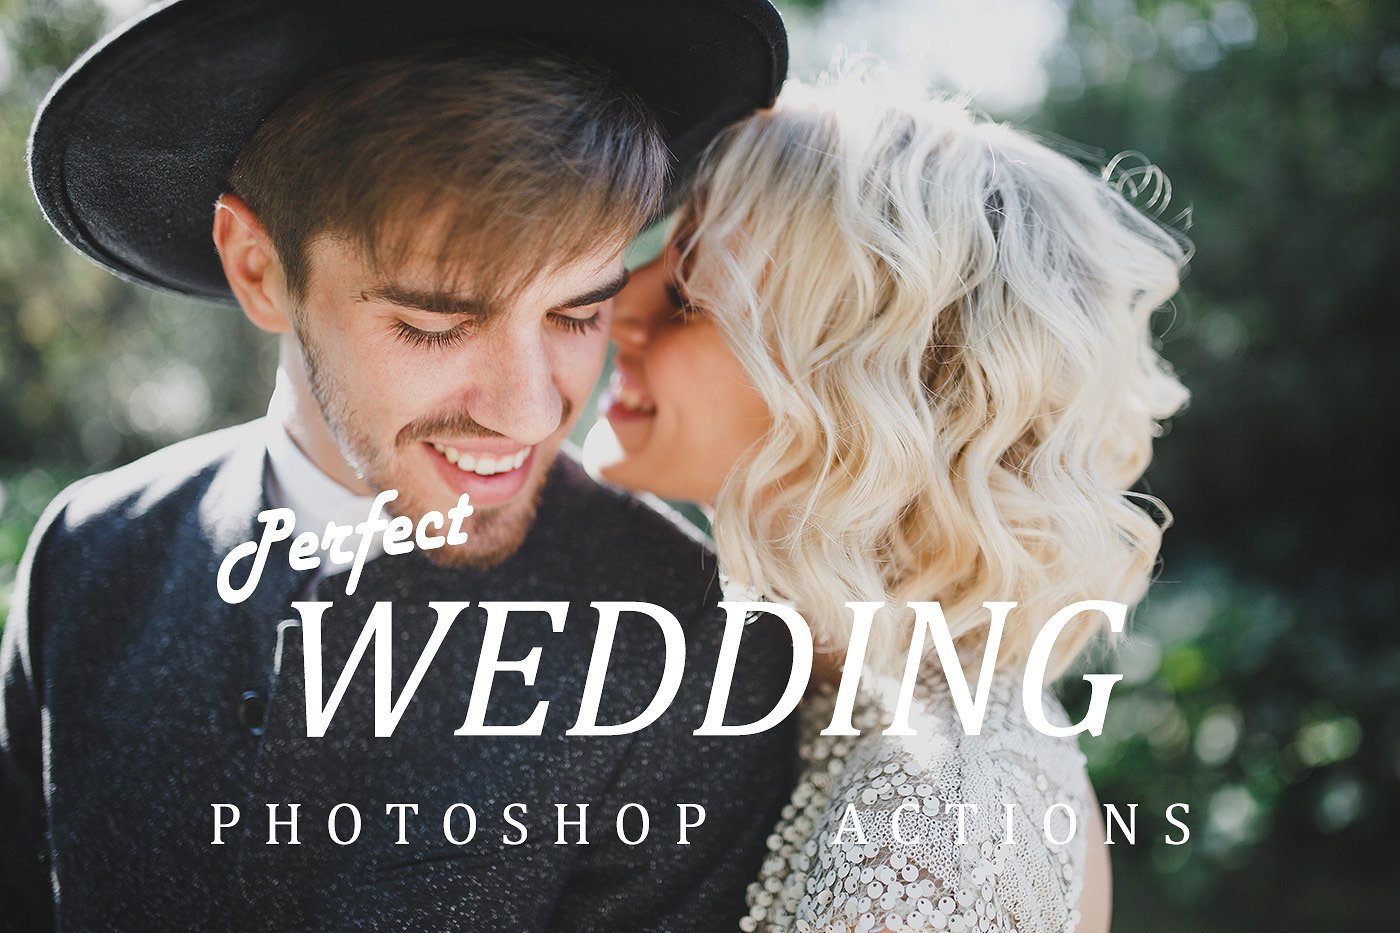 Photoshop wedding actions